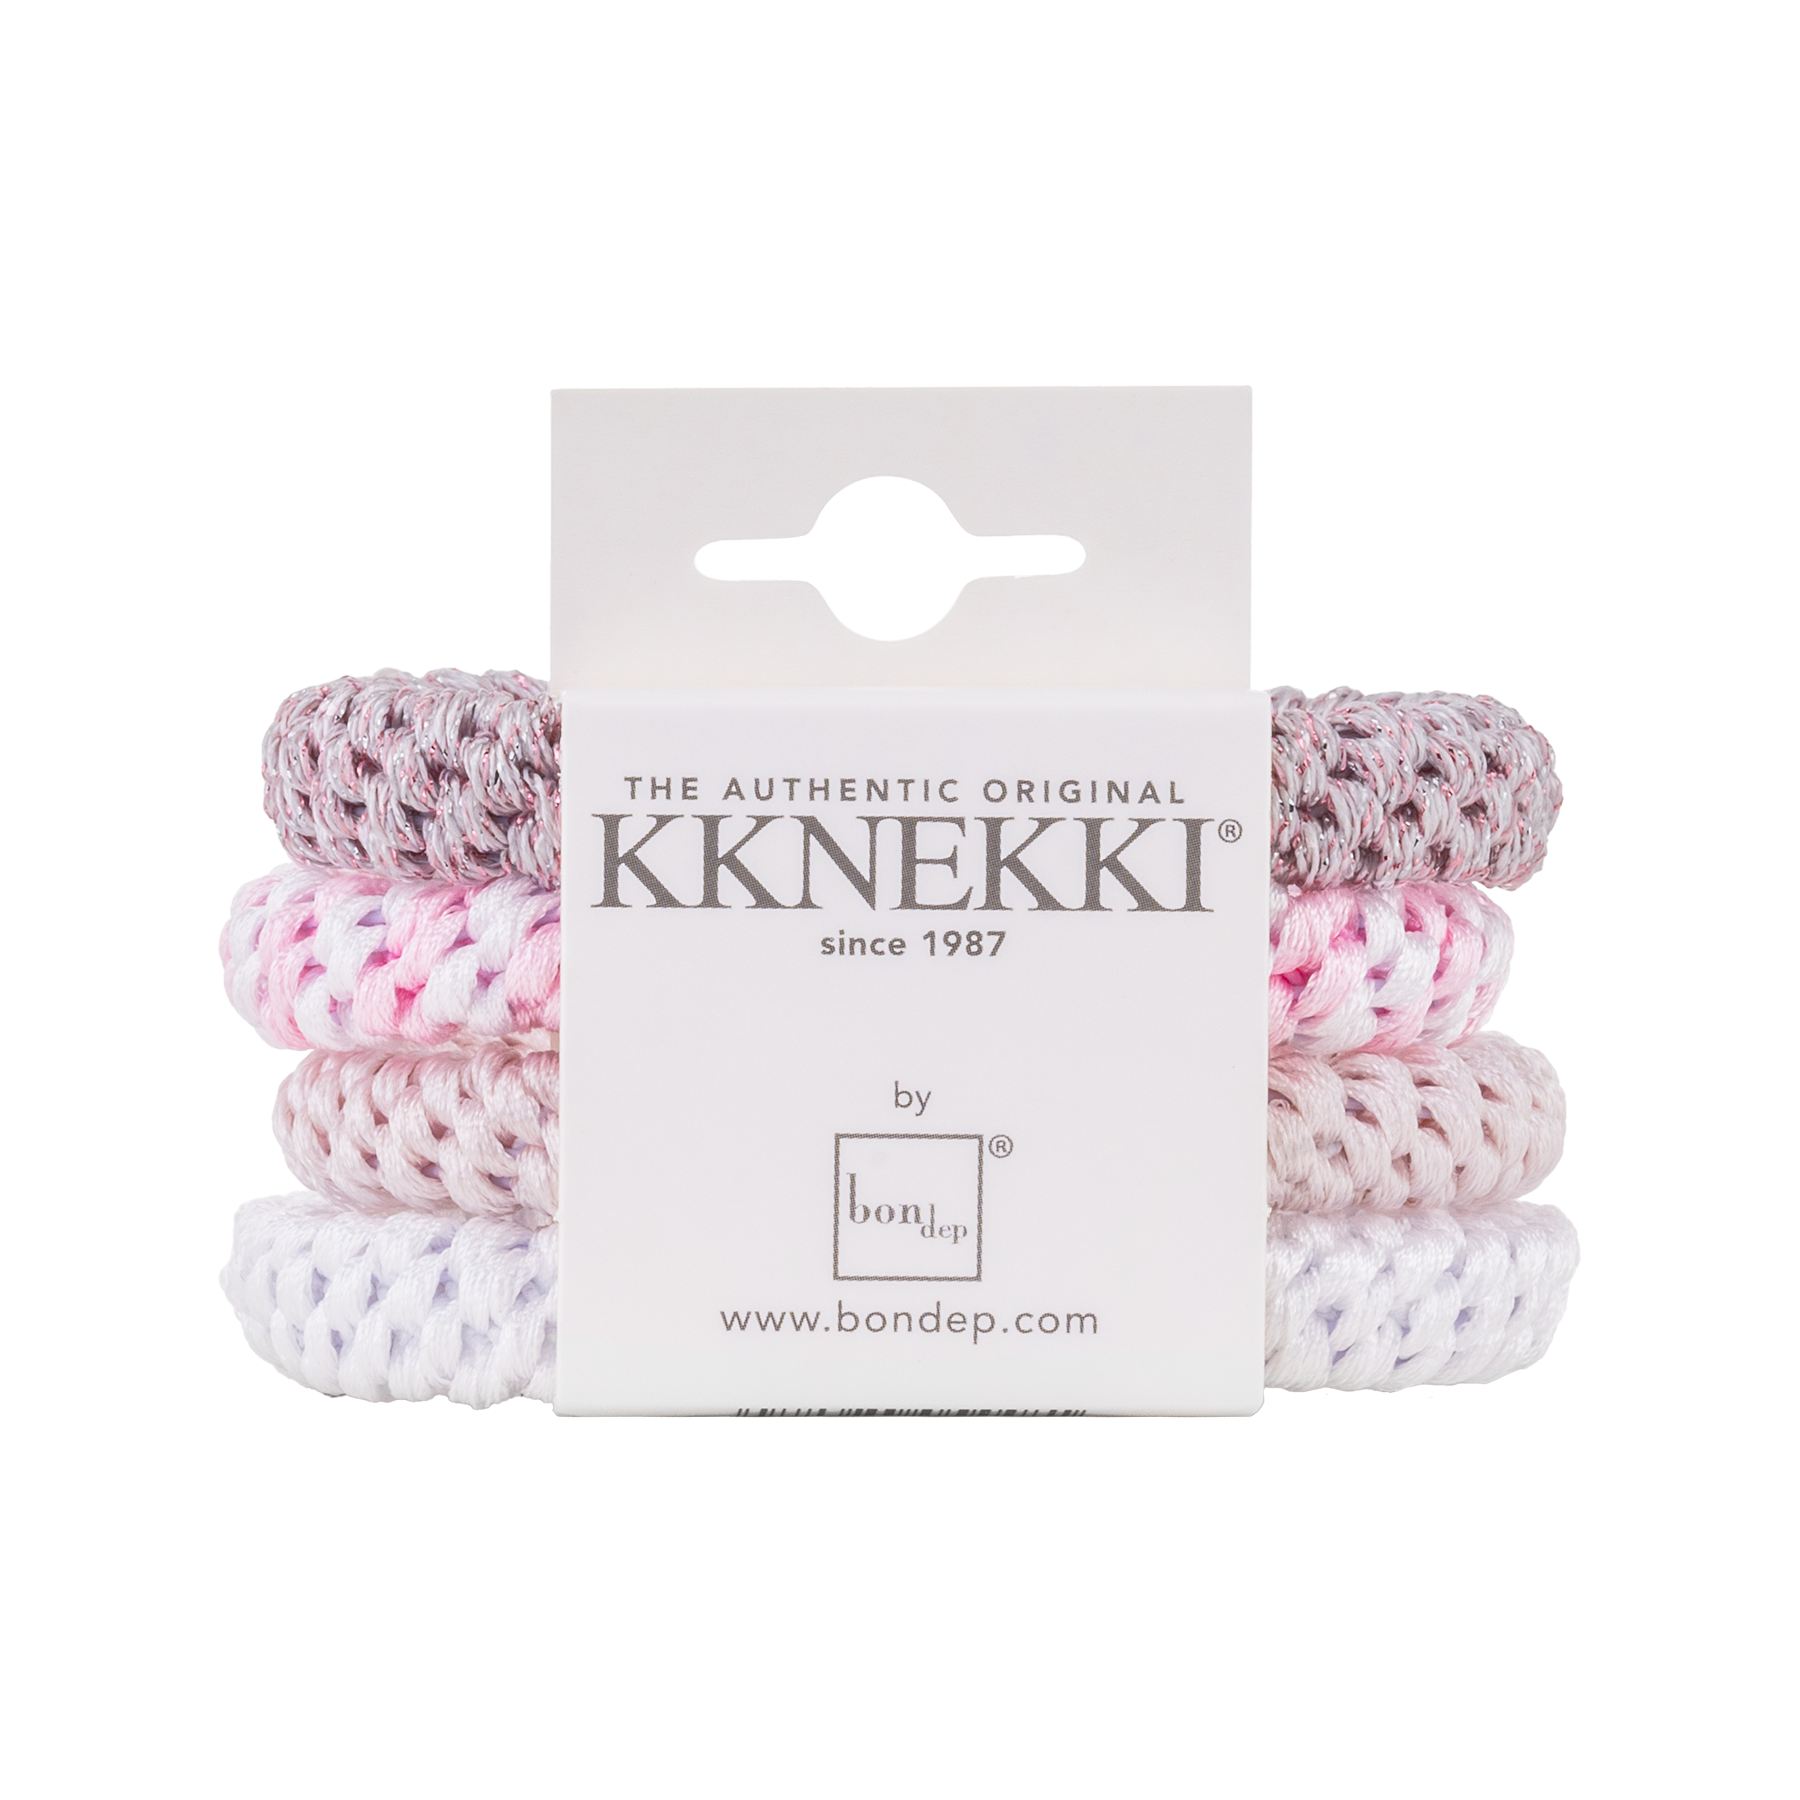 Set Of 4 Pale Pink & White Kknekki Hair Ties